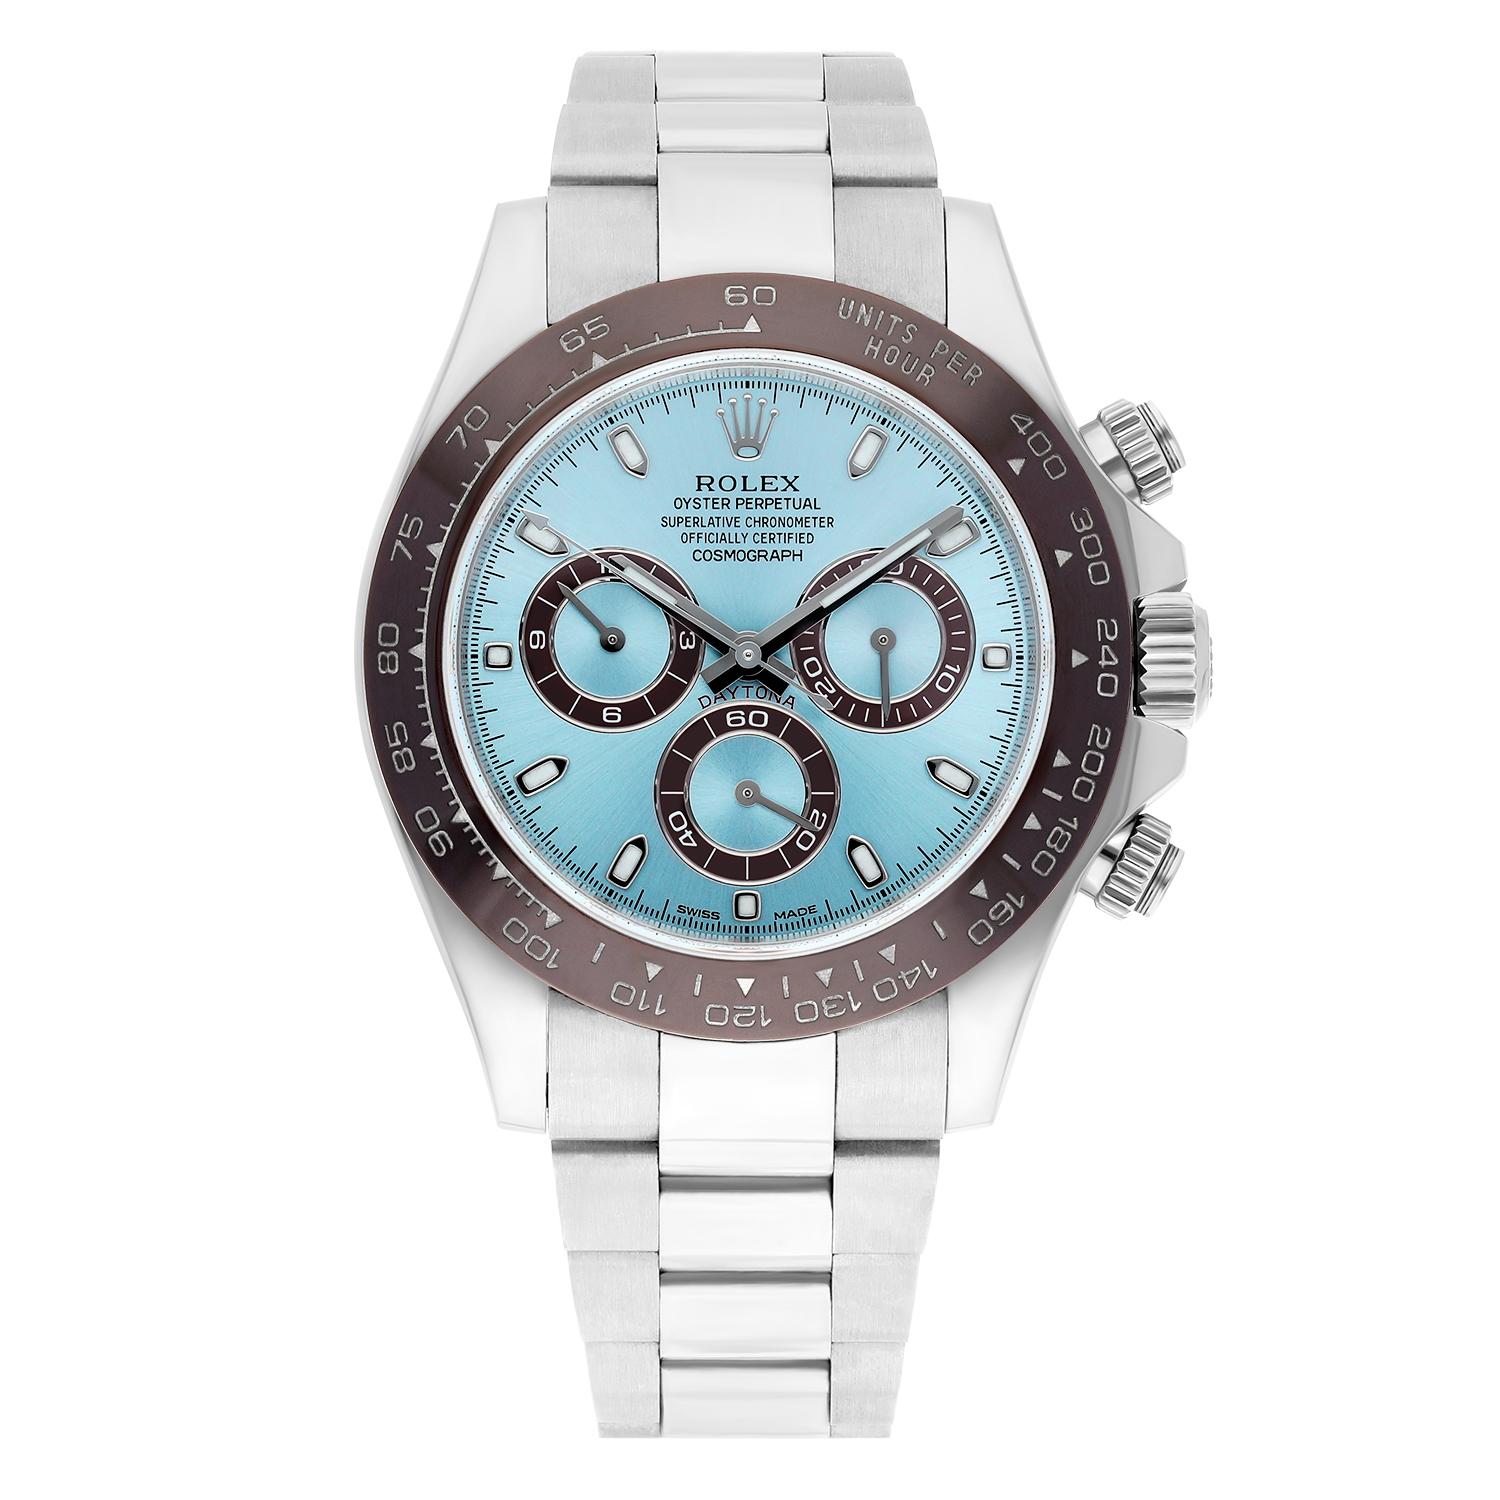 Cette montre-bracelet Rolex Cosmograph Daytona est un accessoire luxueux et sportif parfait pour les hommes qui apprécient les montres haut de gamme. Fabriquée en platine, la montre présente un boîtier argenté, une lunette fixe avec tachymètre et un